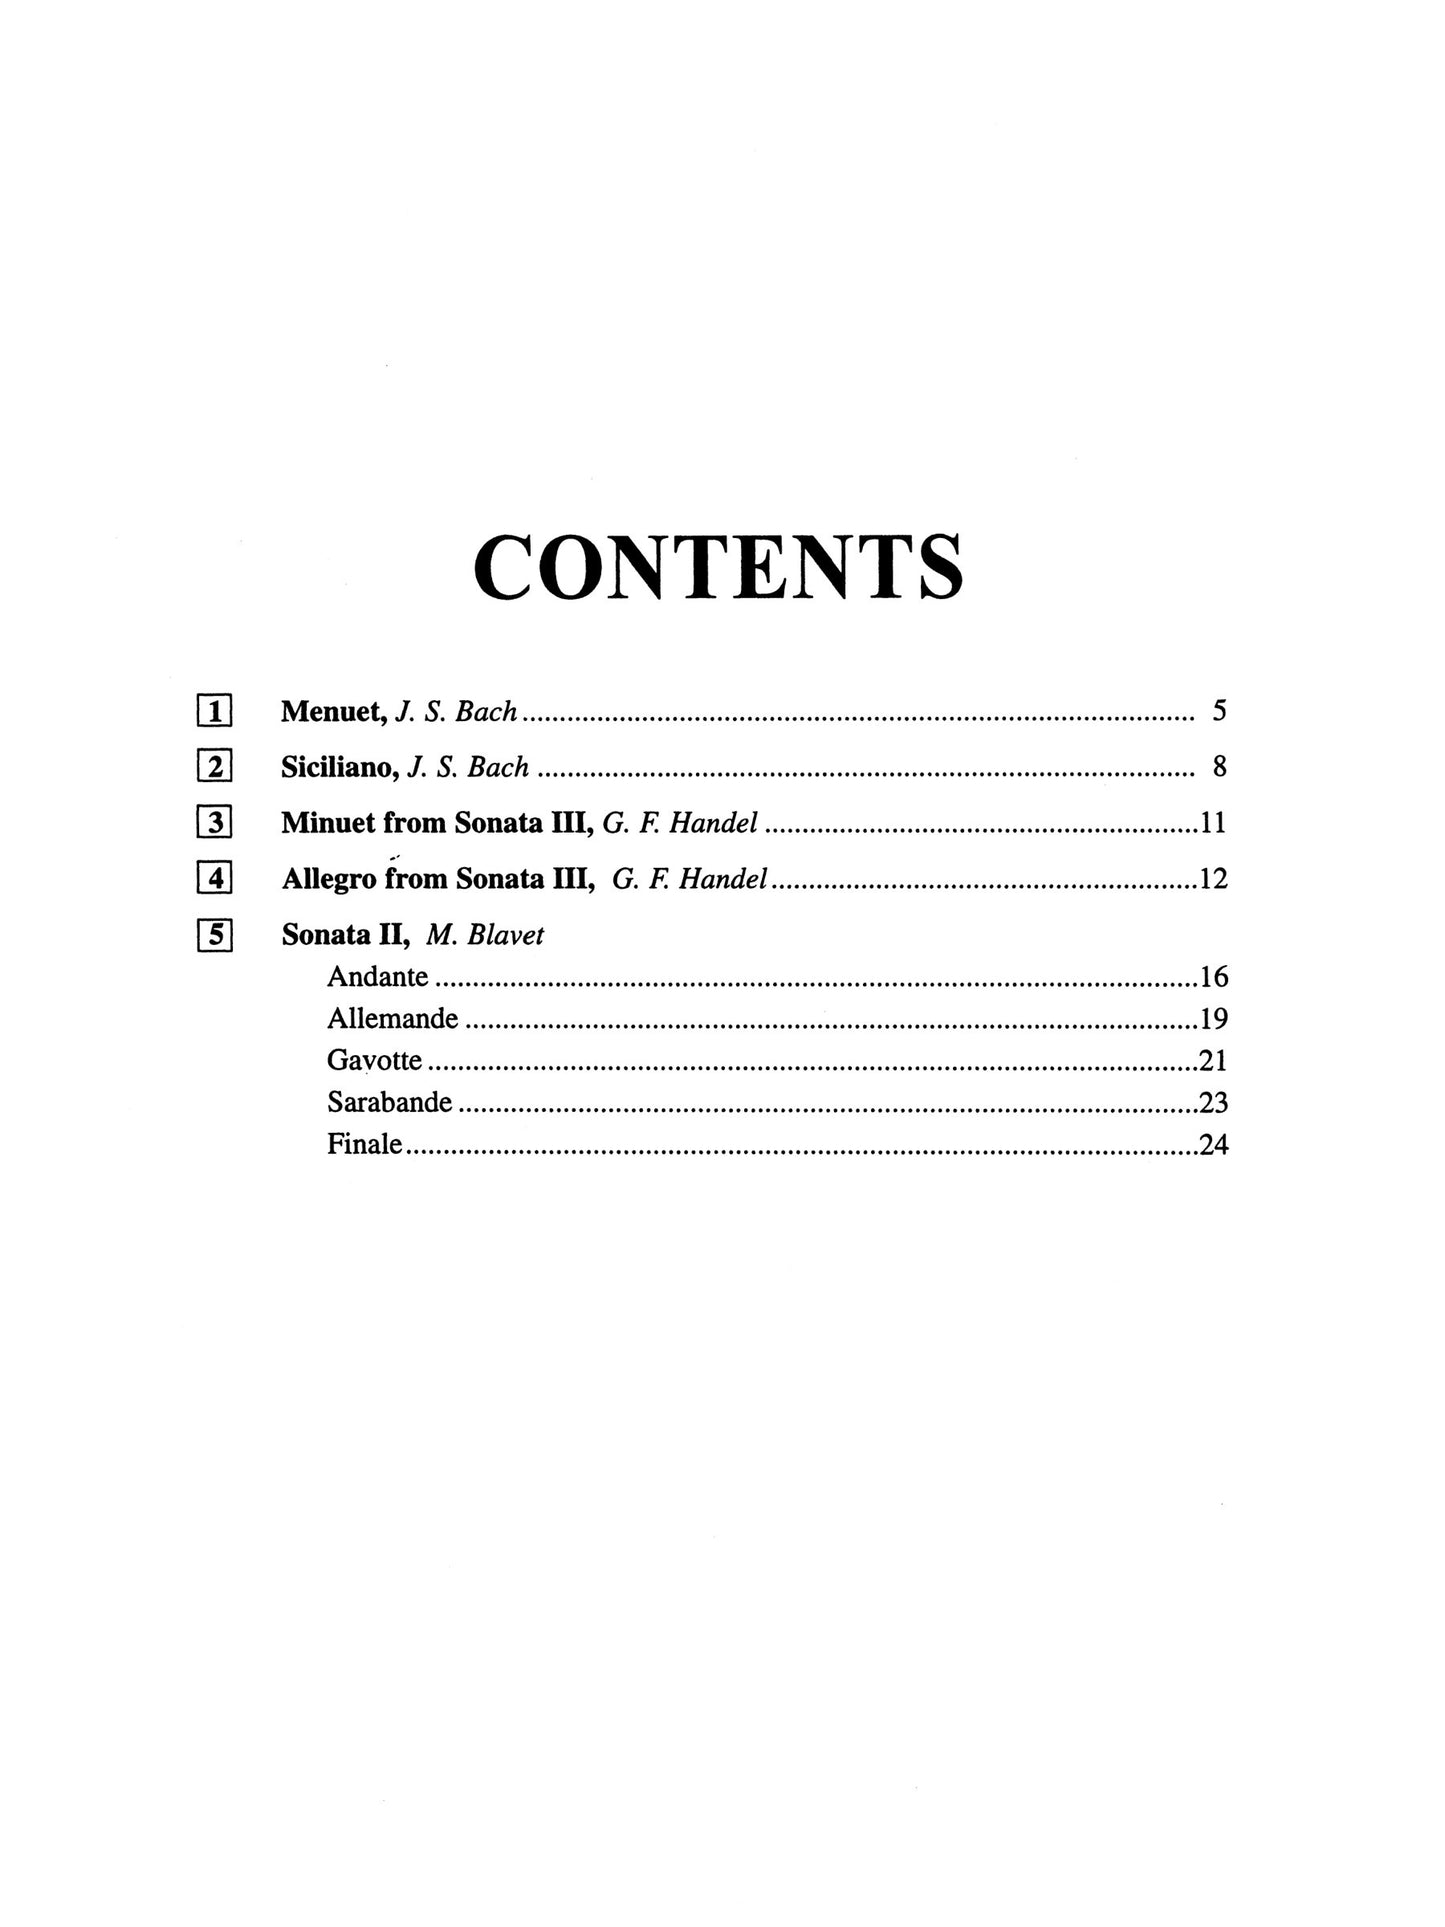 Suzuki Flute School - Volume 4 Piano Accompaniment Book